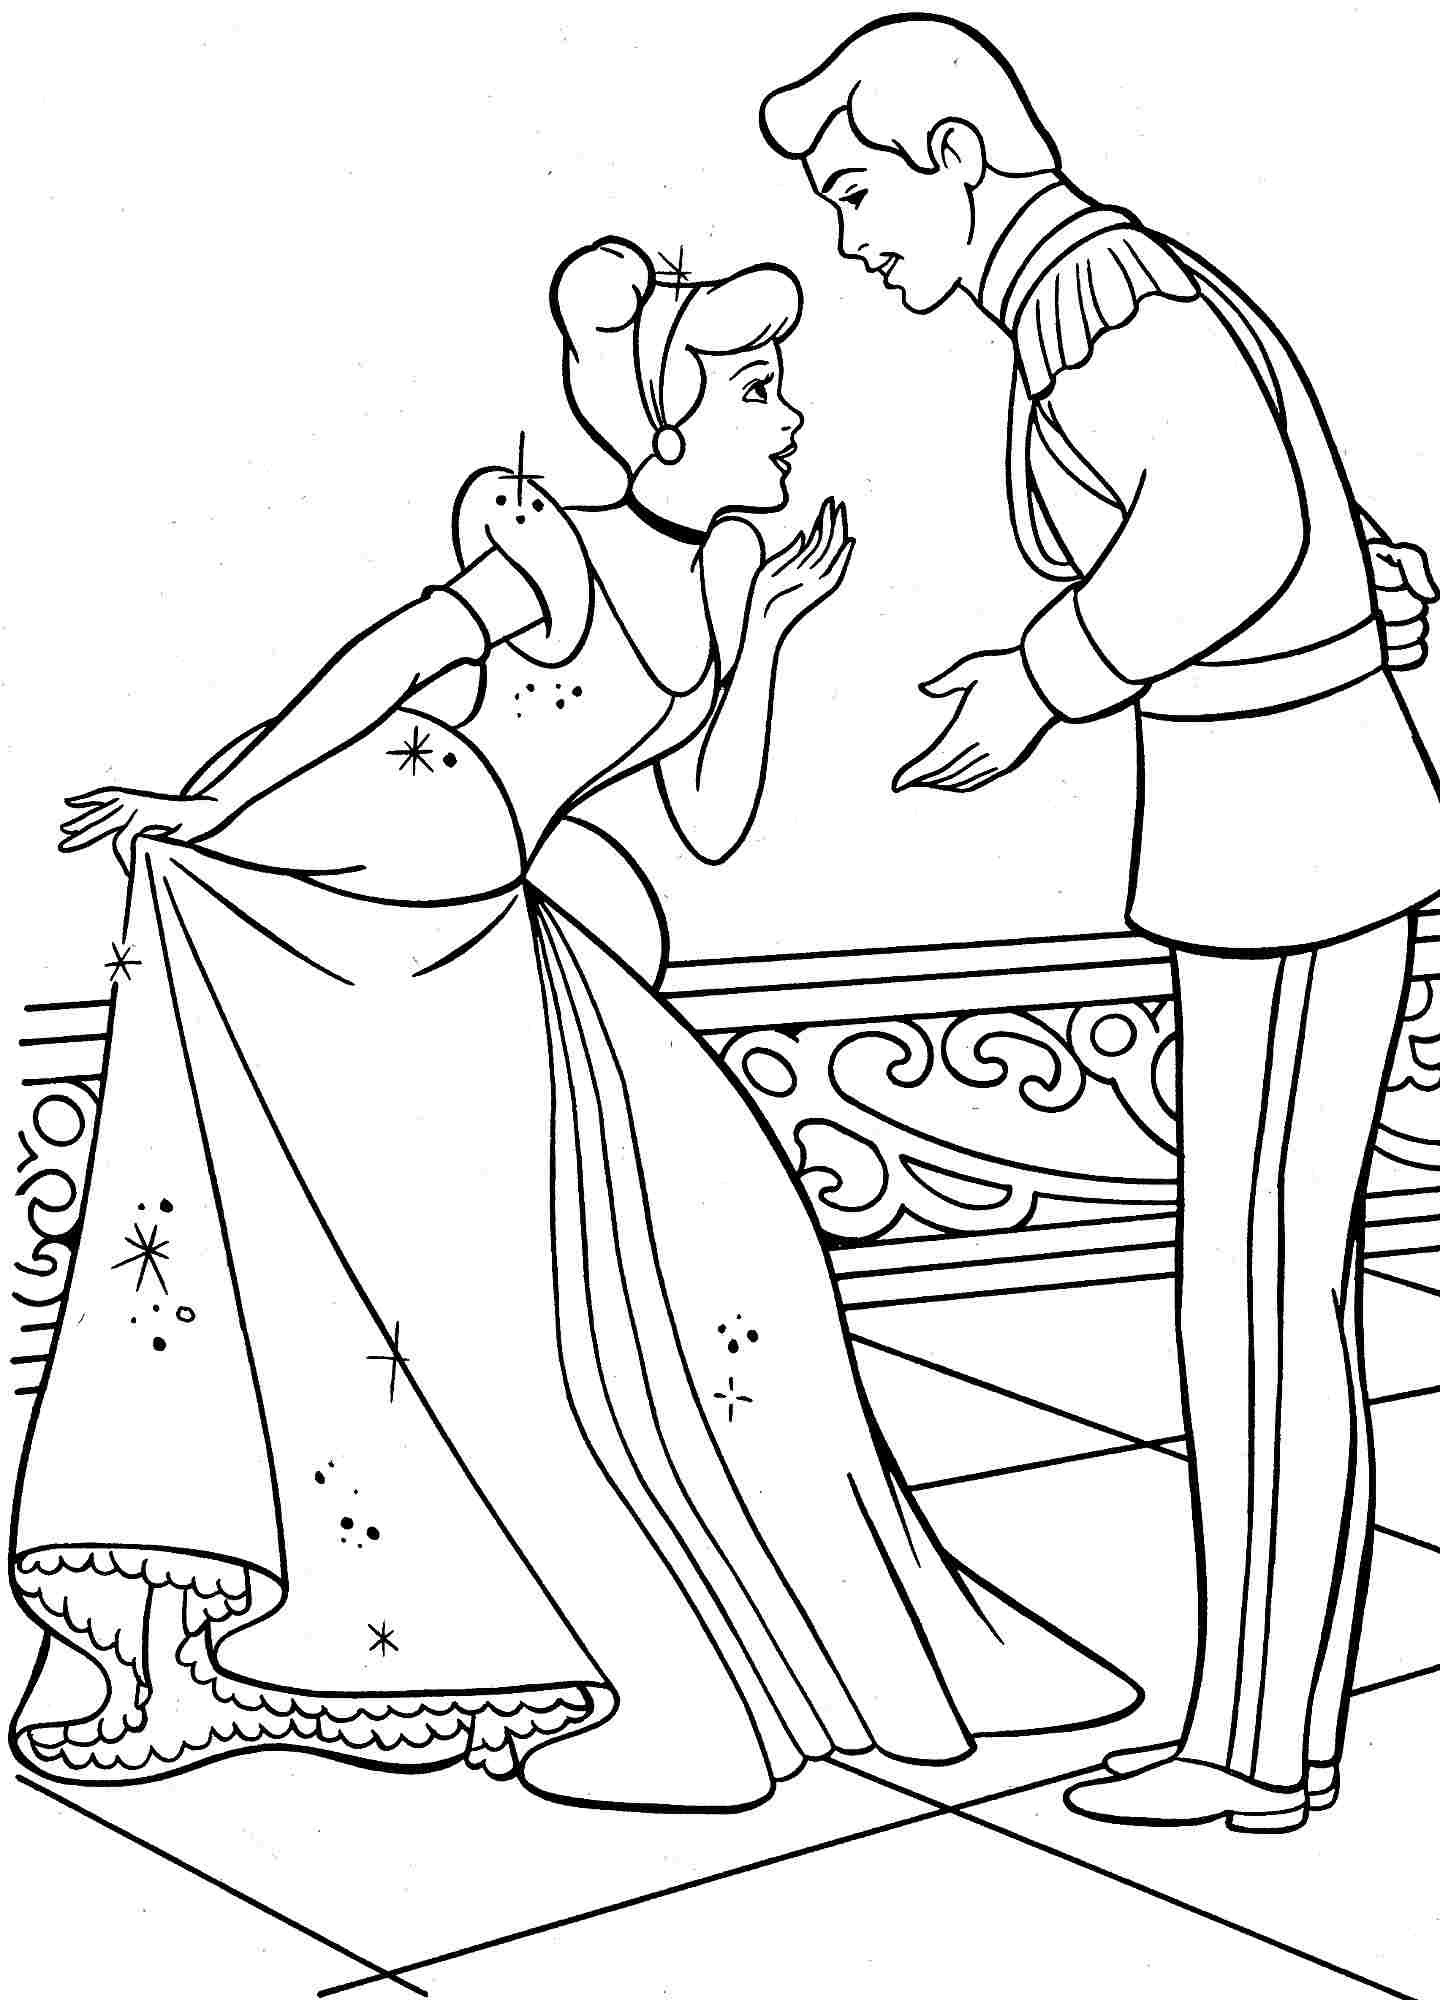 disney-princess-cinderella-coloring-pages-games-of-disney-princess-cinderella-coloring-pages-games Disney Princess Cinderella Coloring Pages Games Cartoon 